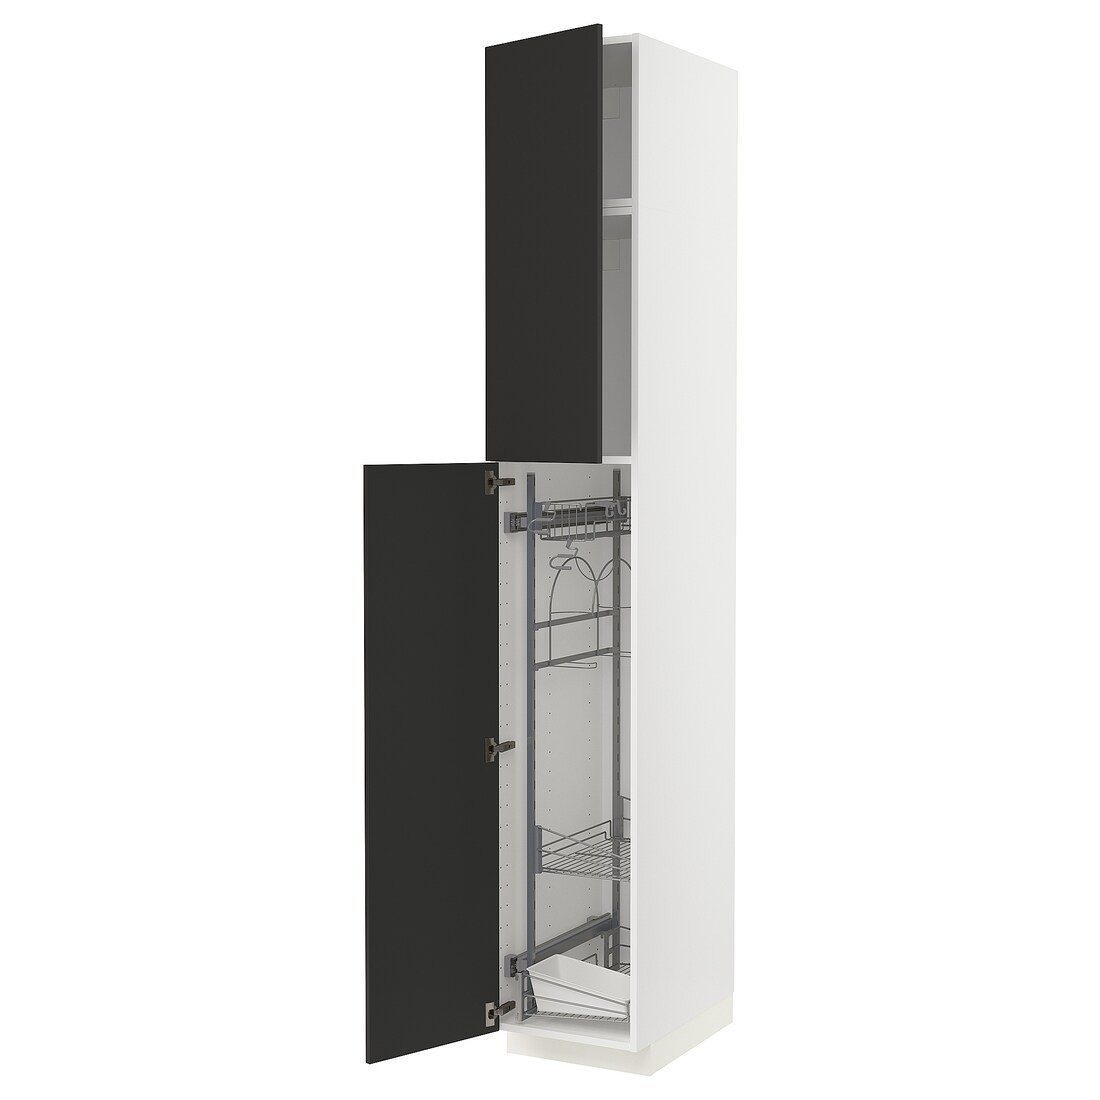 METOD МЕТОД Высокий шкаф с отделением для аксессуаров для уборки, белый / Nickebo матовый антрацит, 40x60x240 см